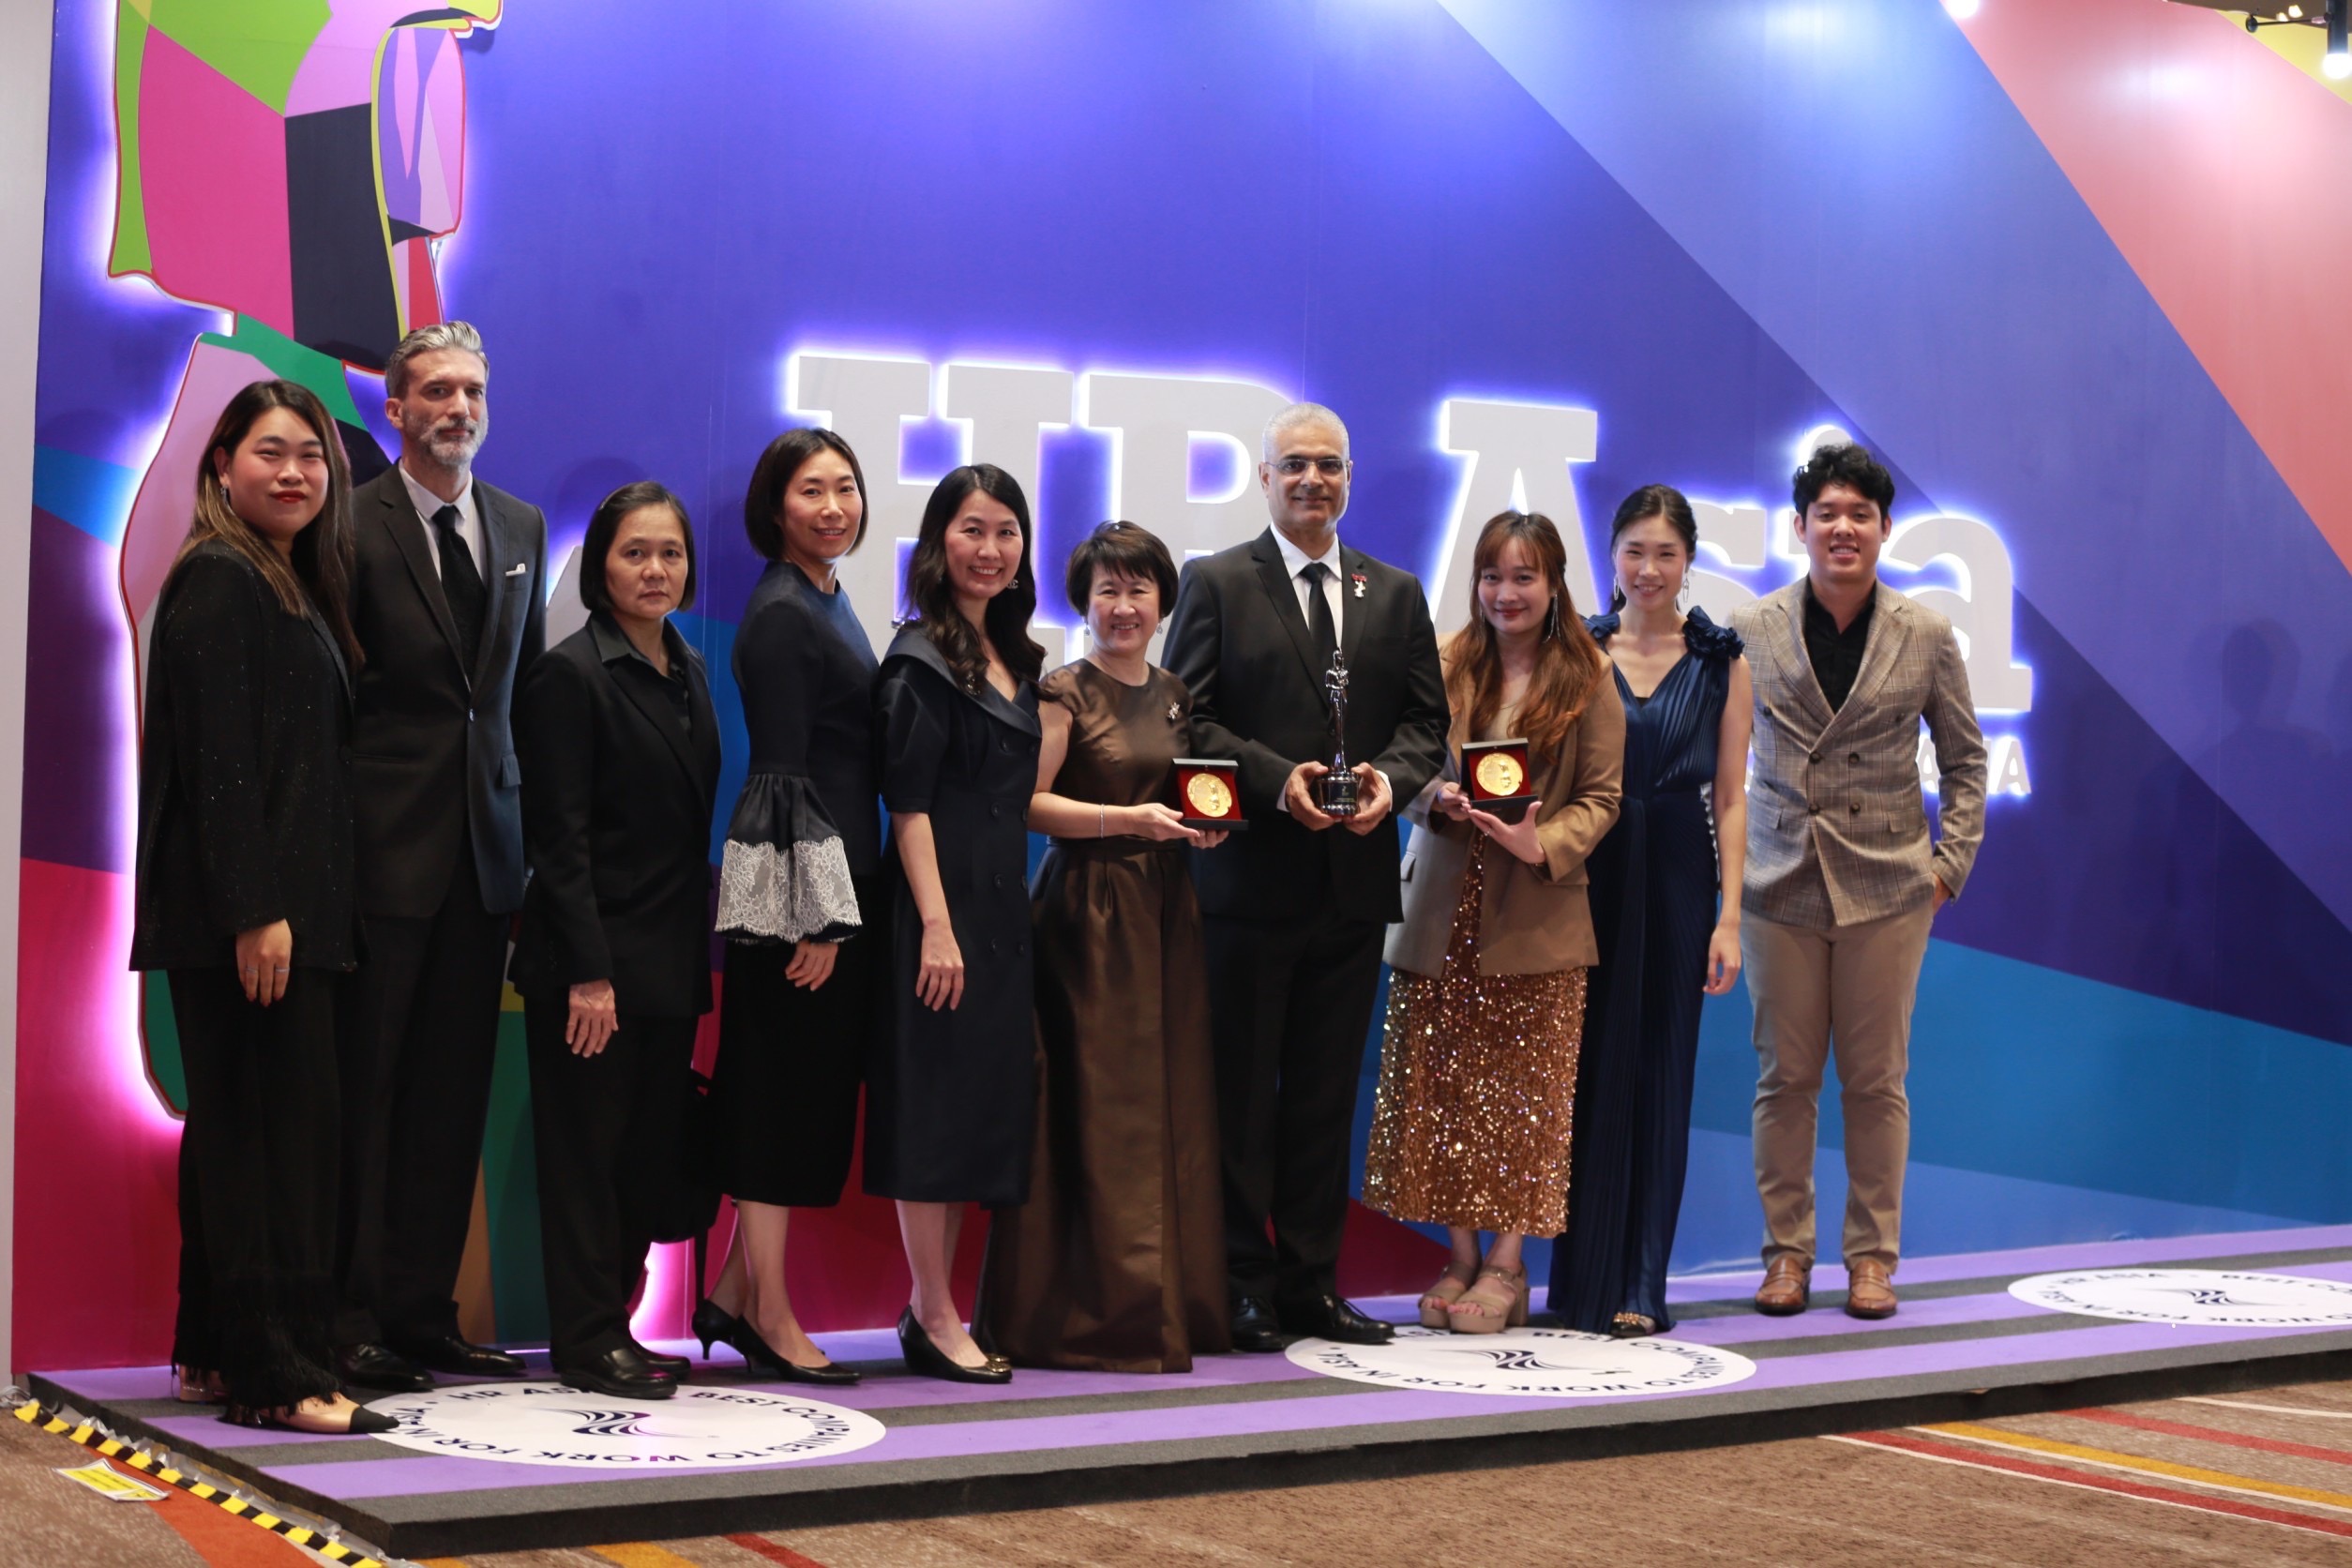 ถอดรหัส “ทรู คอร์ป” สุดยอดองค์กรที่น่าทำงานด้วยมากที่สุดในเอเชีย กับ 3 รางวัลใหญ่ HR Asia Awards 2023 และอีก 7 รางวัล HR Excellence 2023